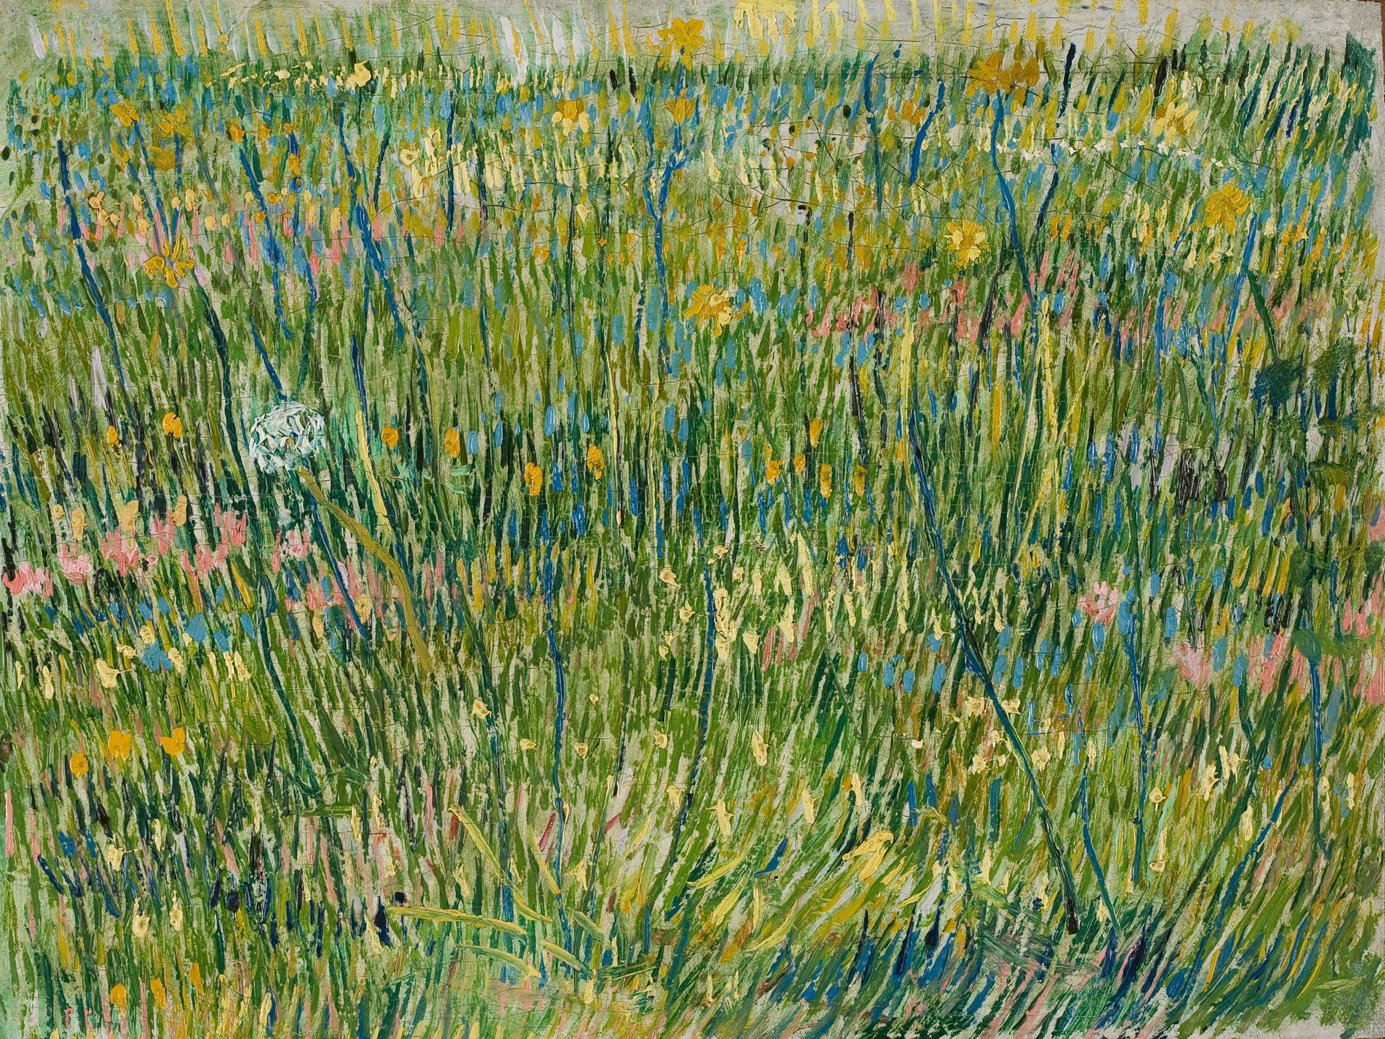 Patch of Grass by Vincent van Gogh - 1887 - 39 x 30 cm Kröller-Müller Museum